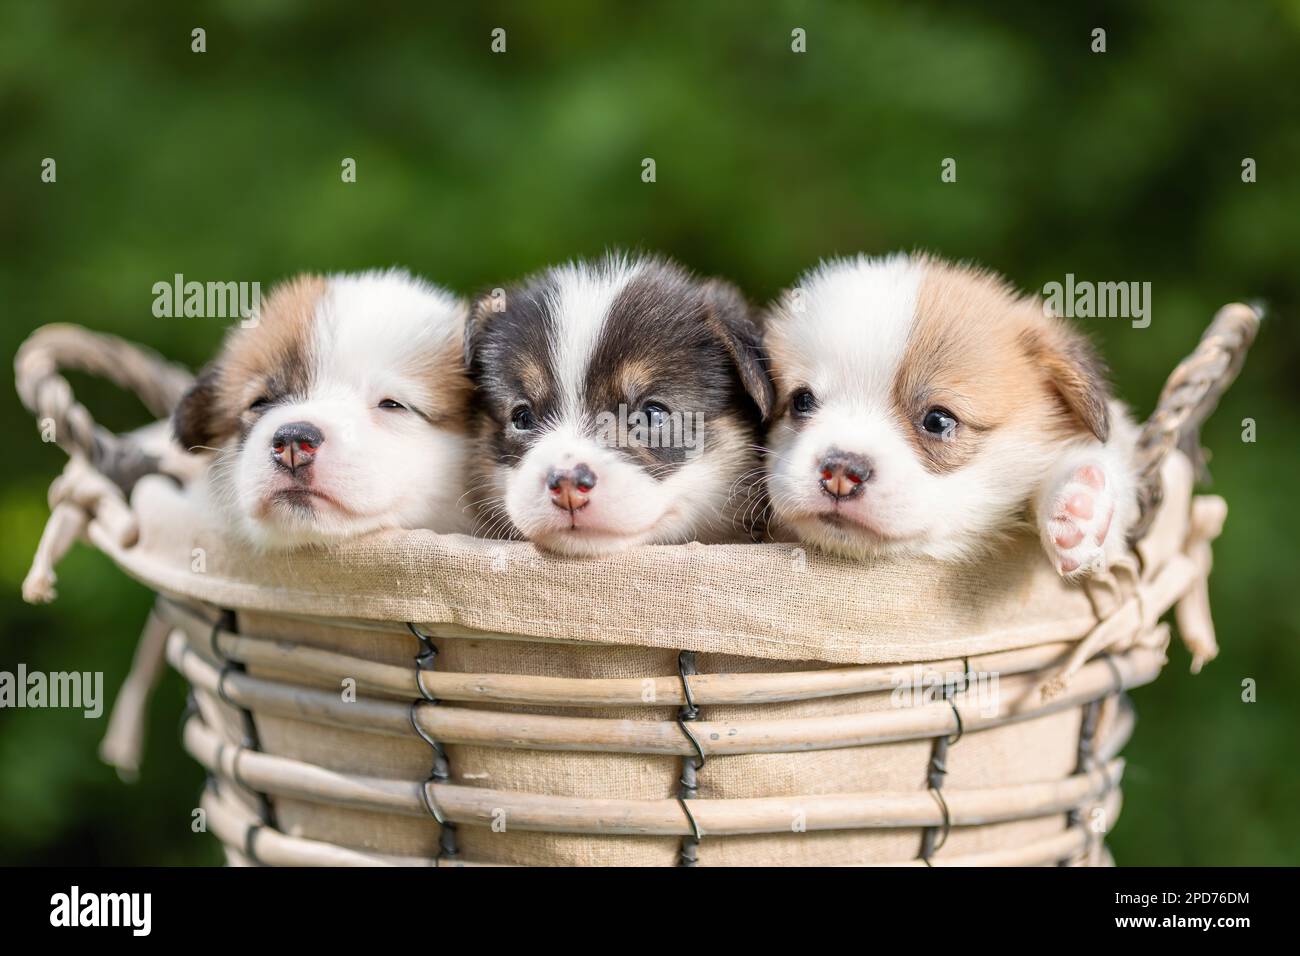 Trois petits chiots mignons de corgi gallois chien de race pembroke dans le panier dans la nature Banque D'Images